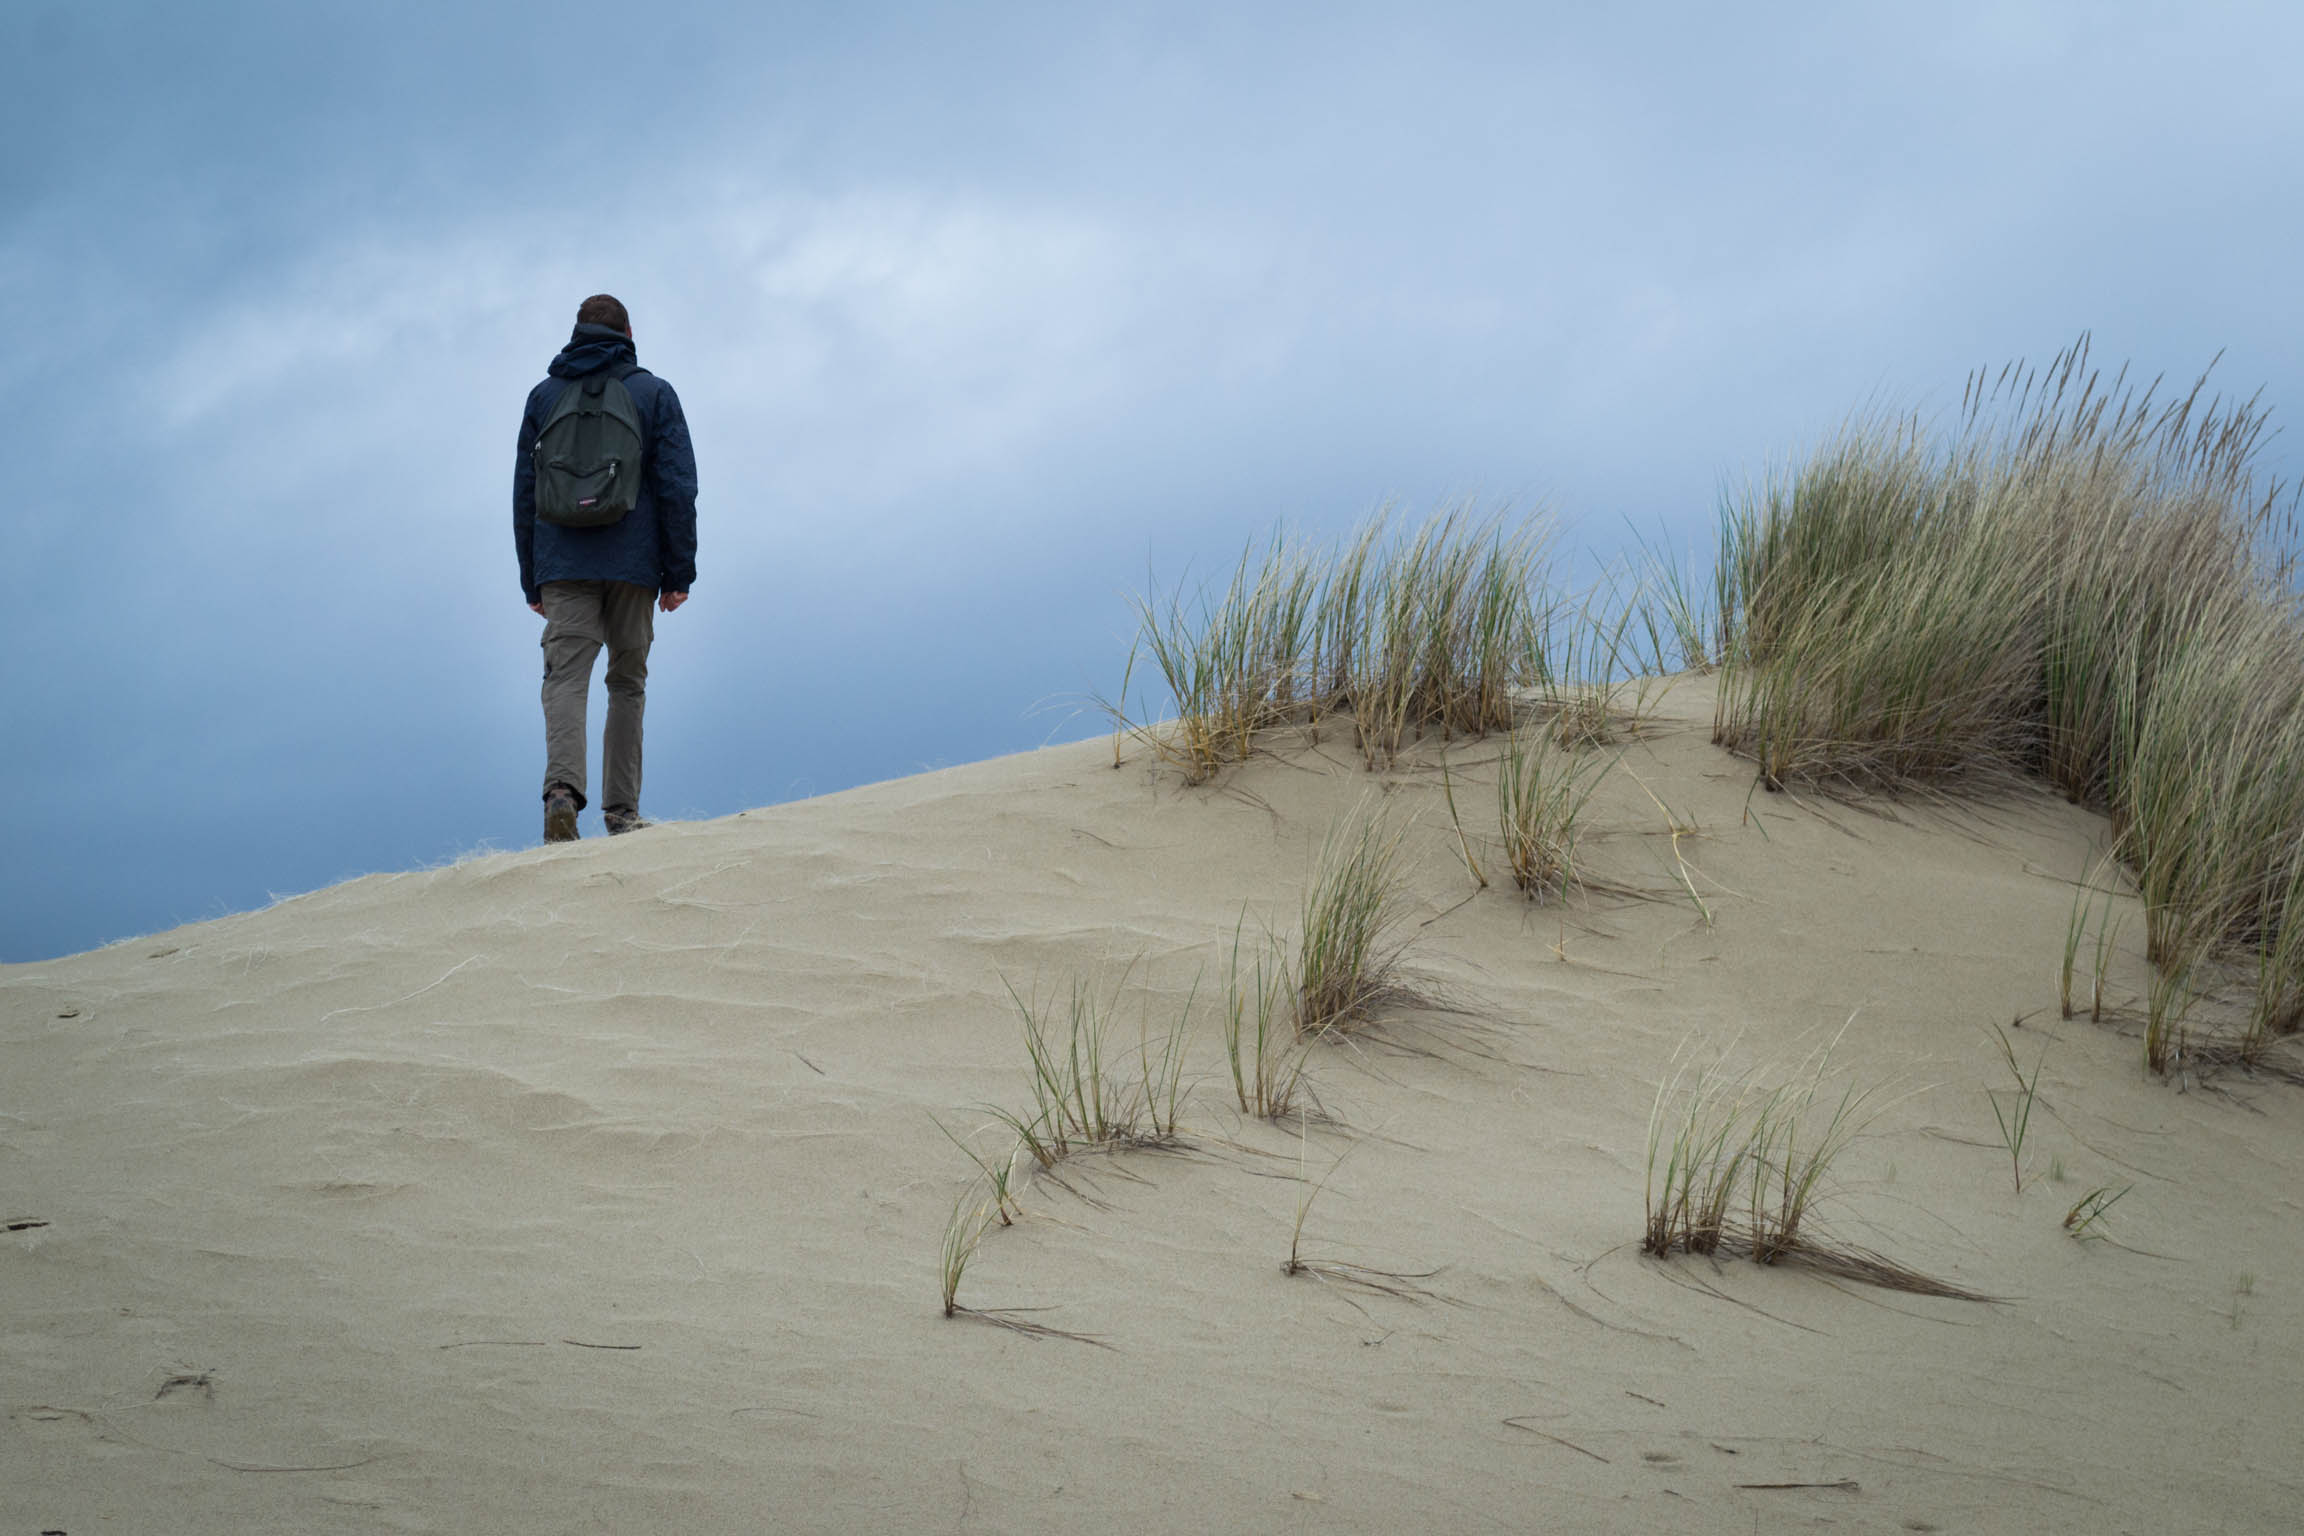 La randonnée sur les dunes pour chercher un chemin alternatif